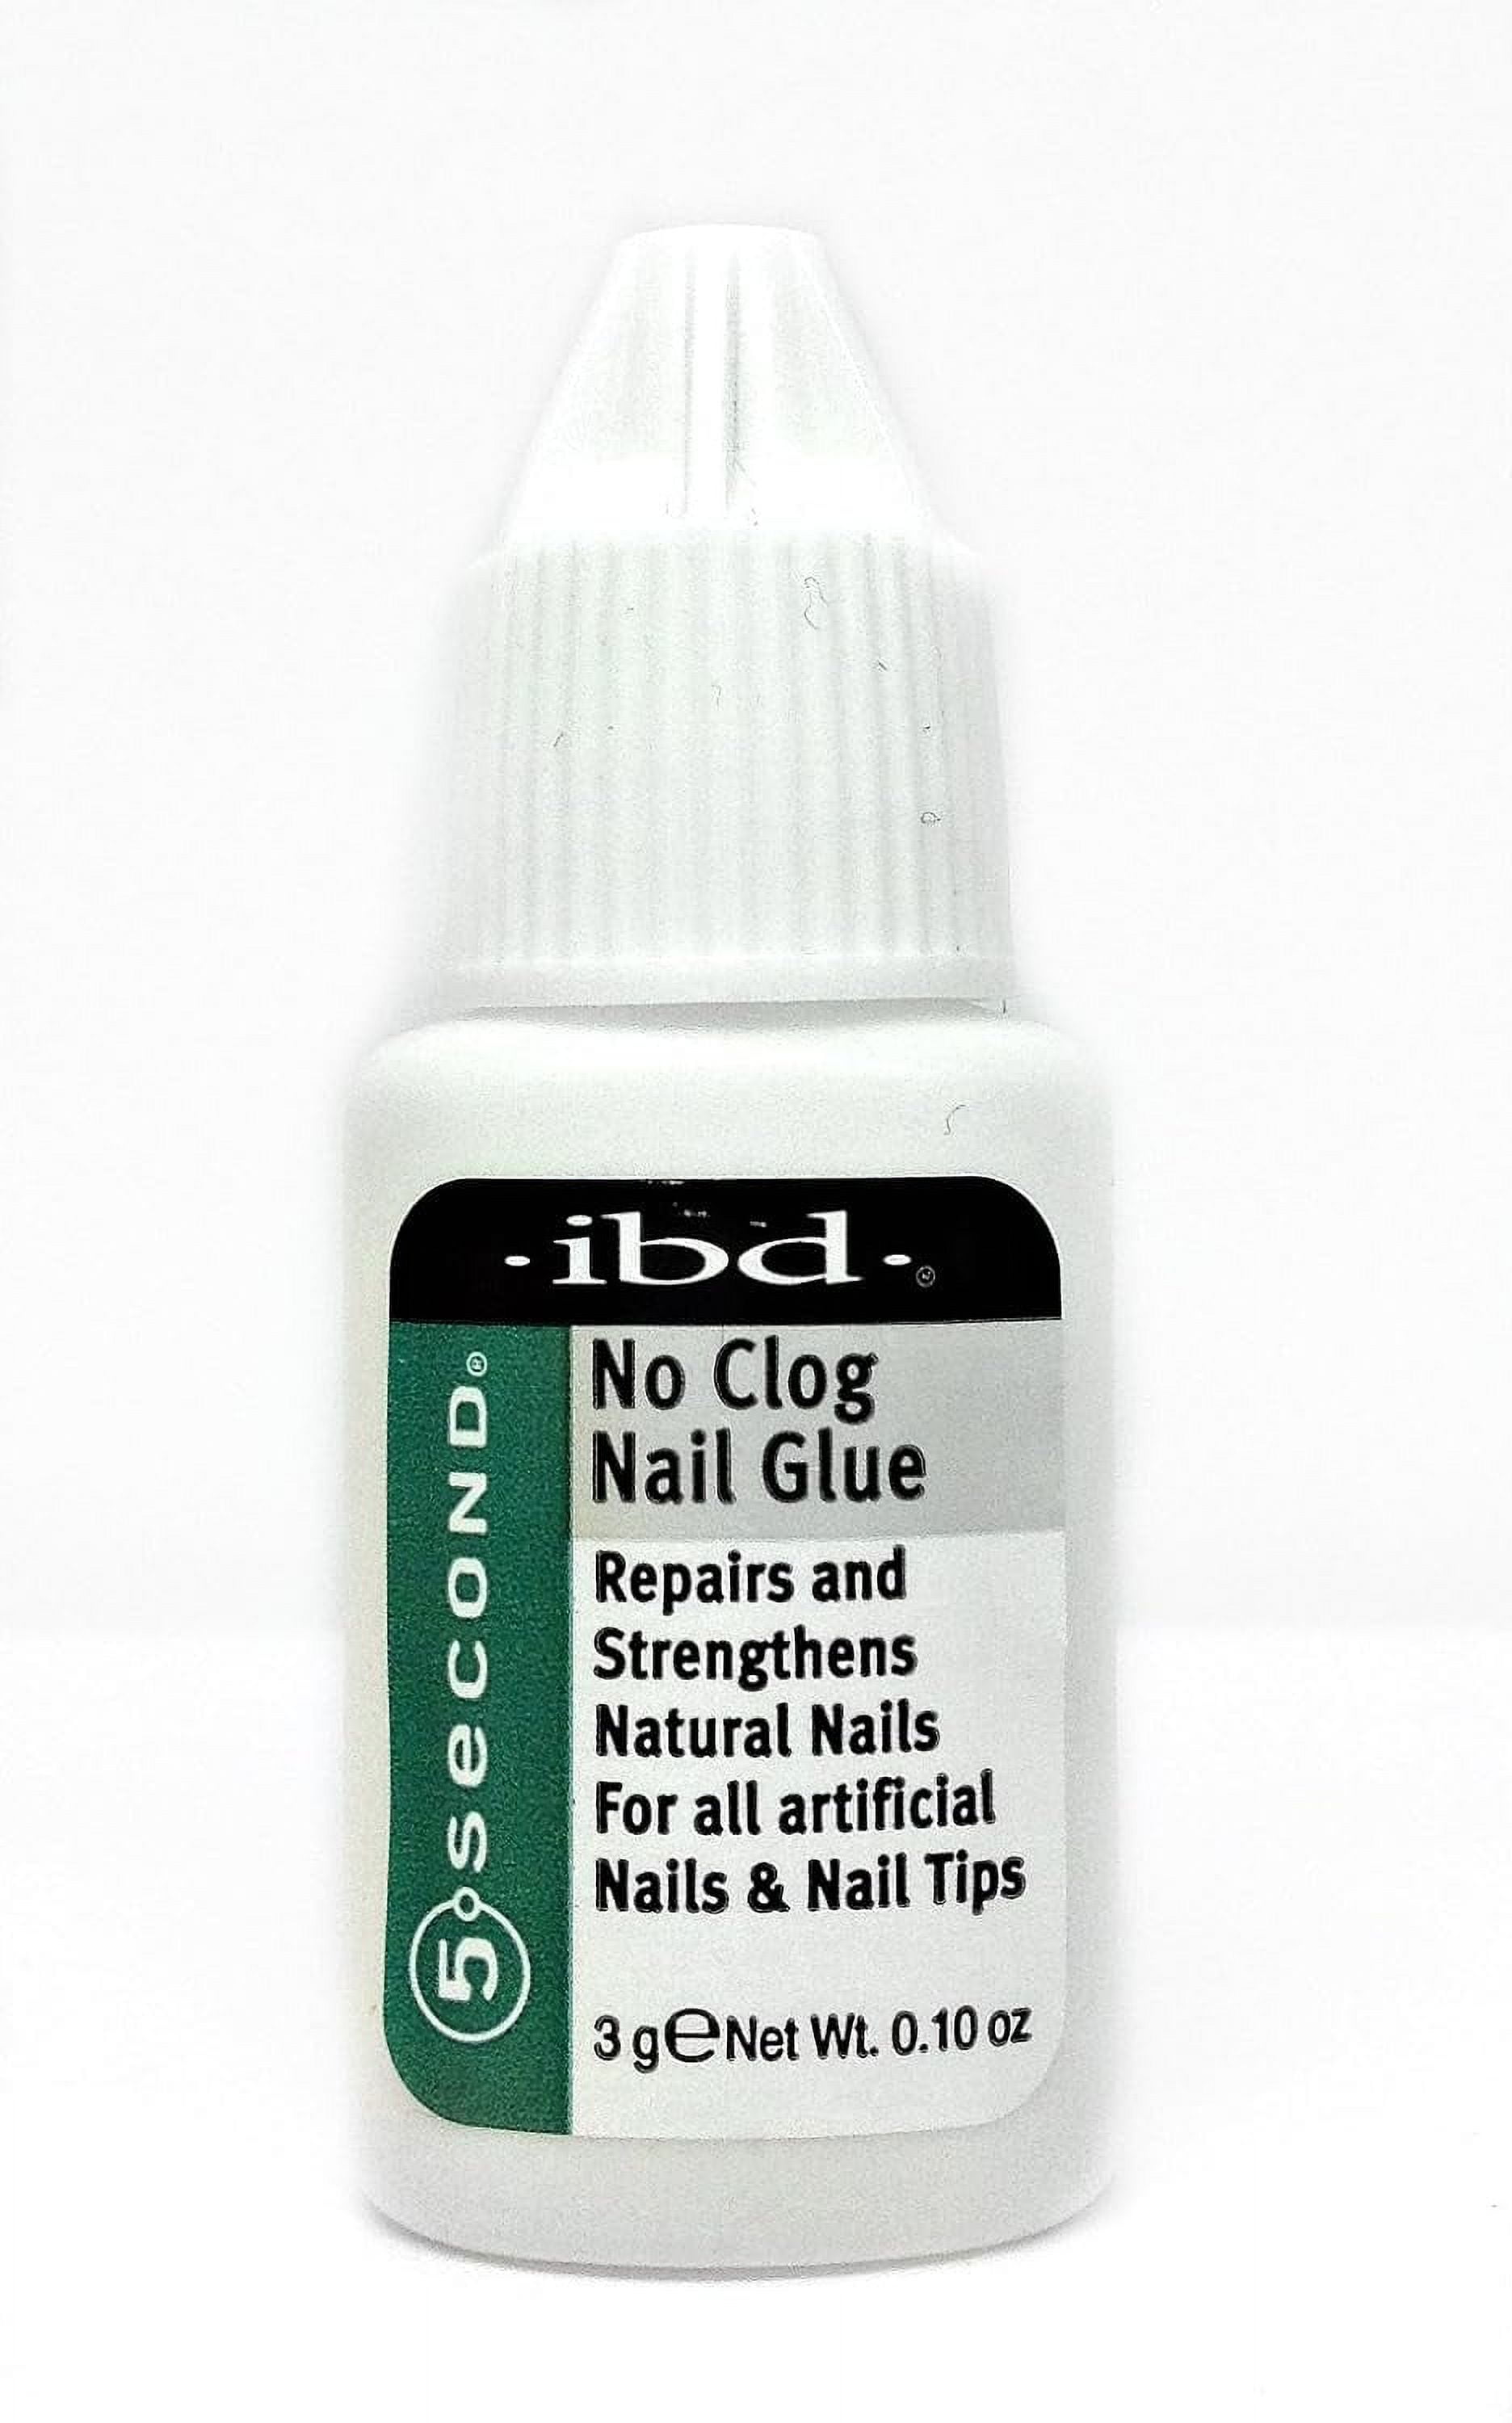 5 Second No-Clog Nail Glue, 1.0 Count - Walmart.com